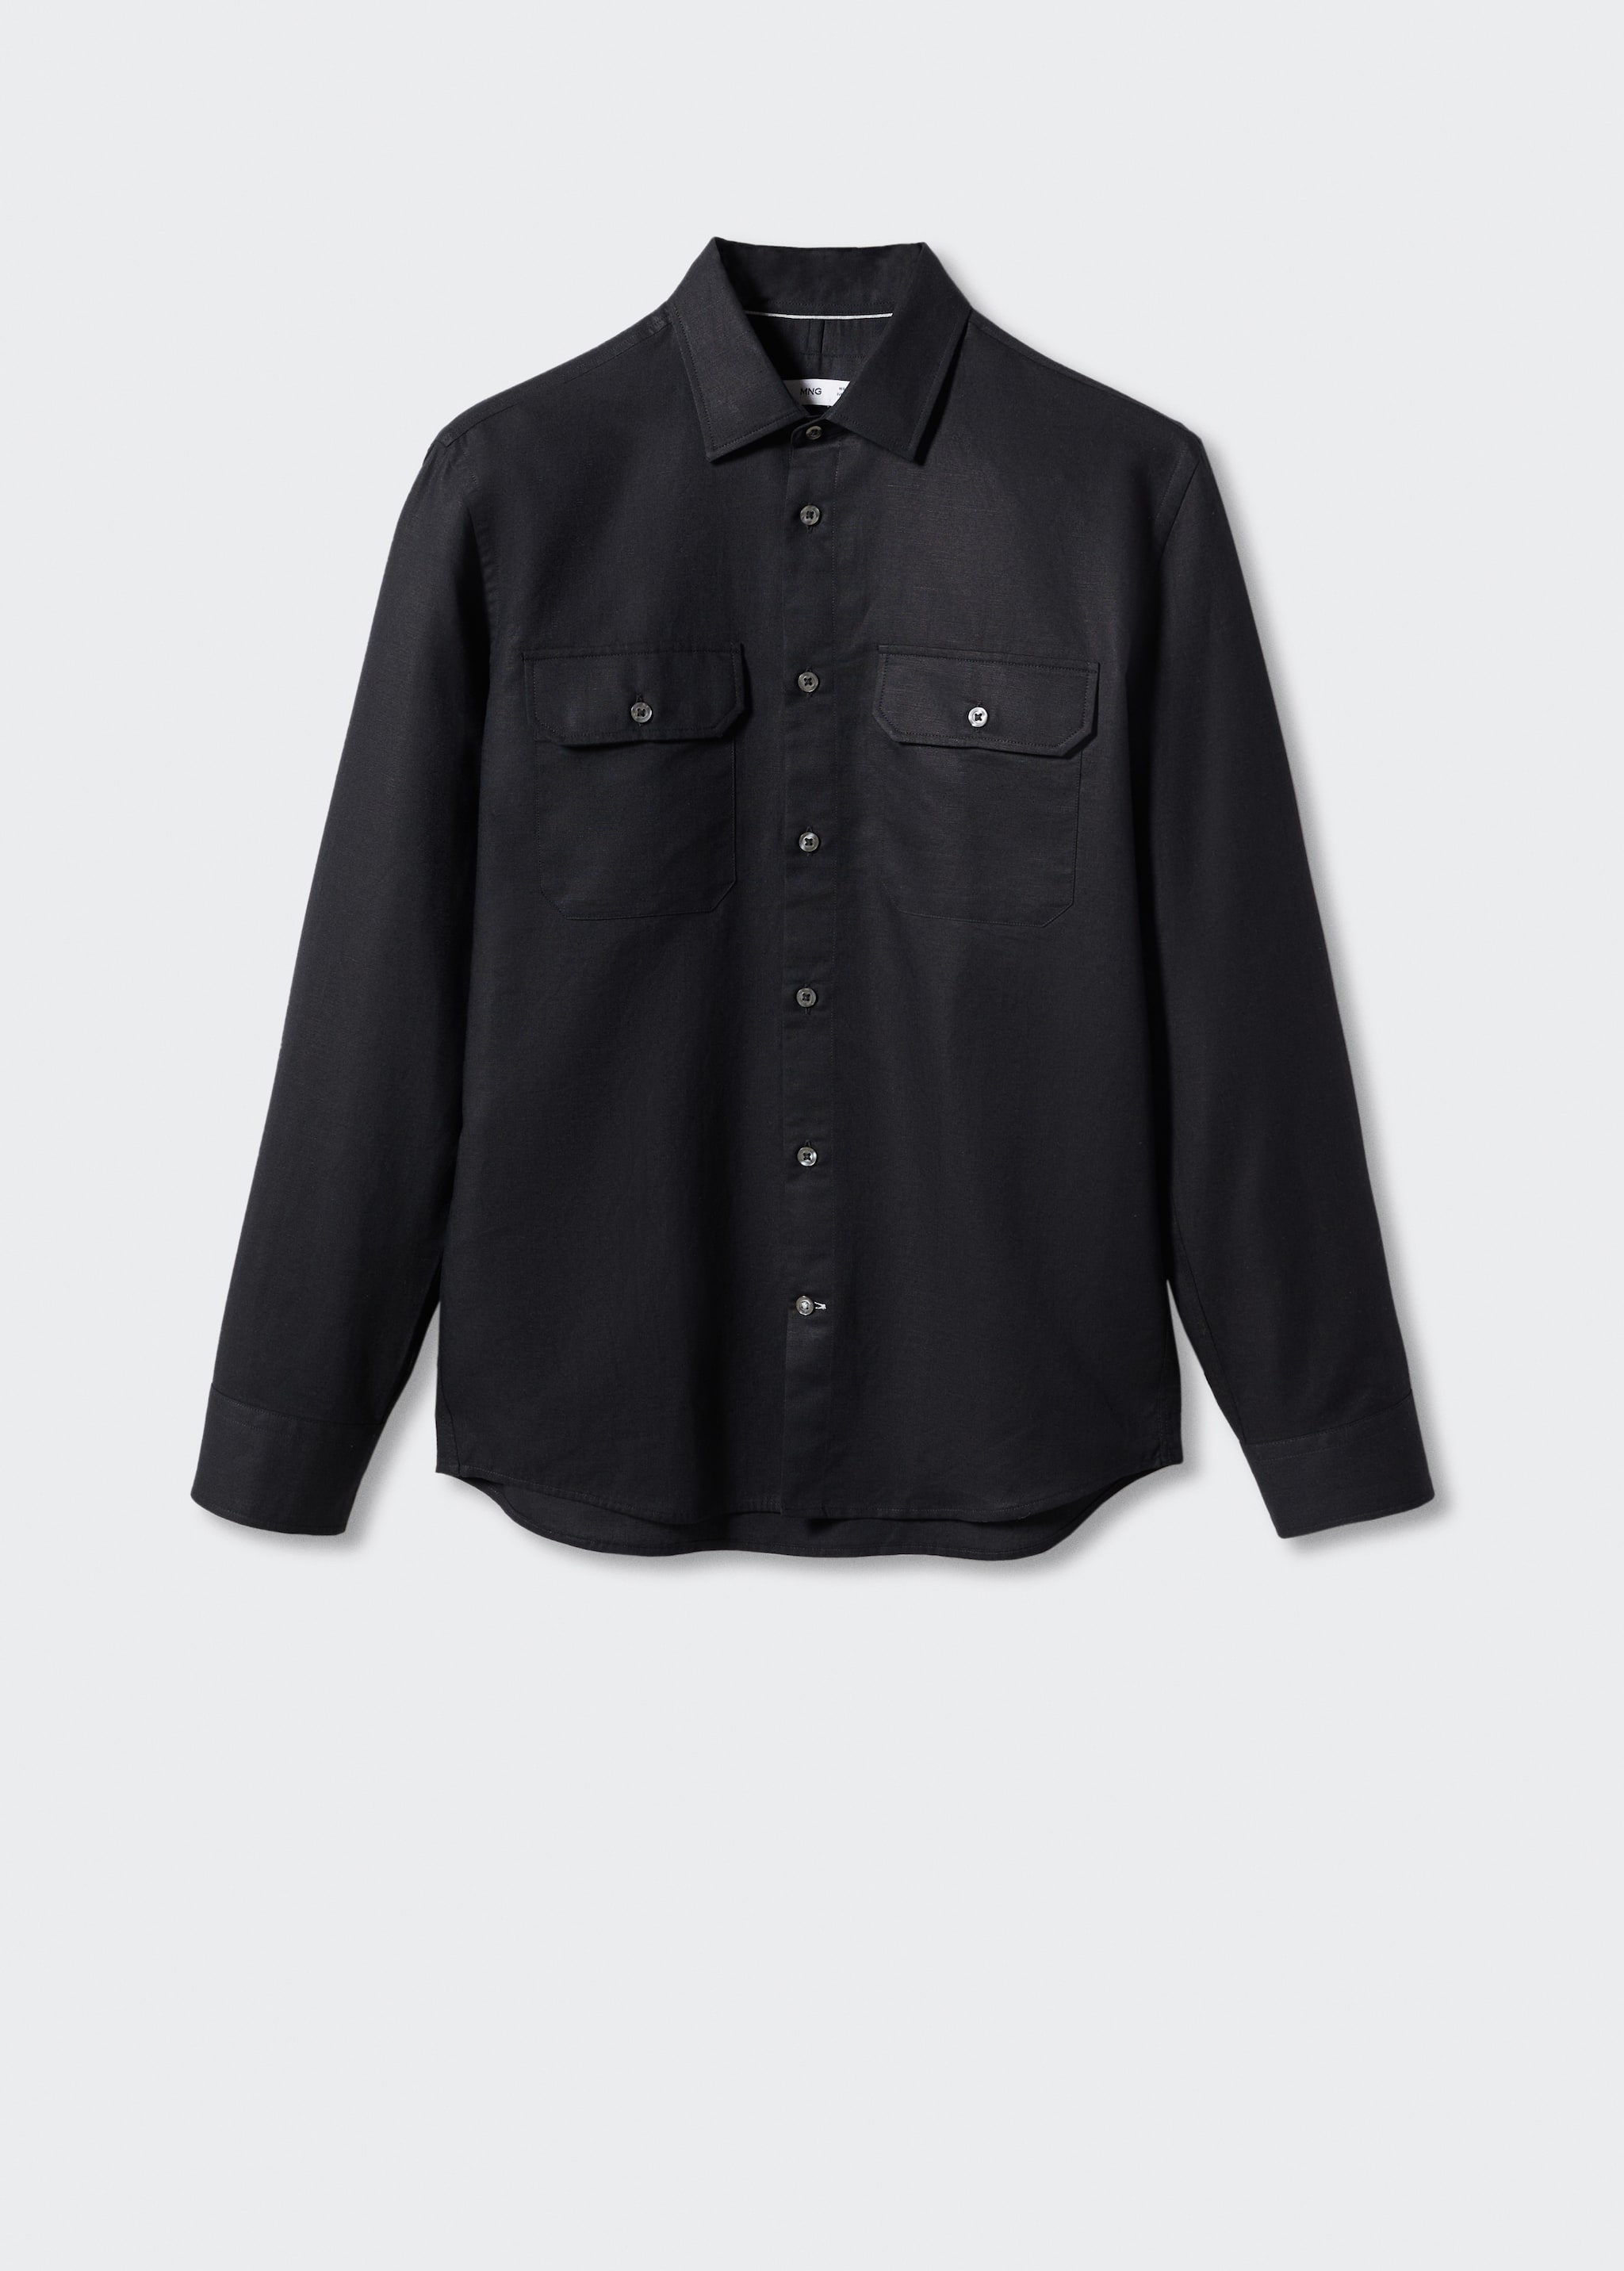 Camisa regular fit lino bolsillos - Artículo sin modelo